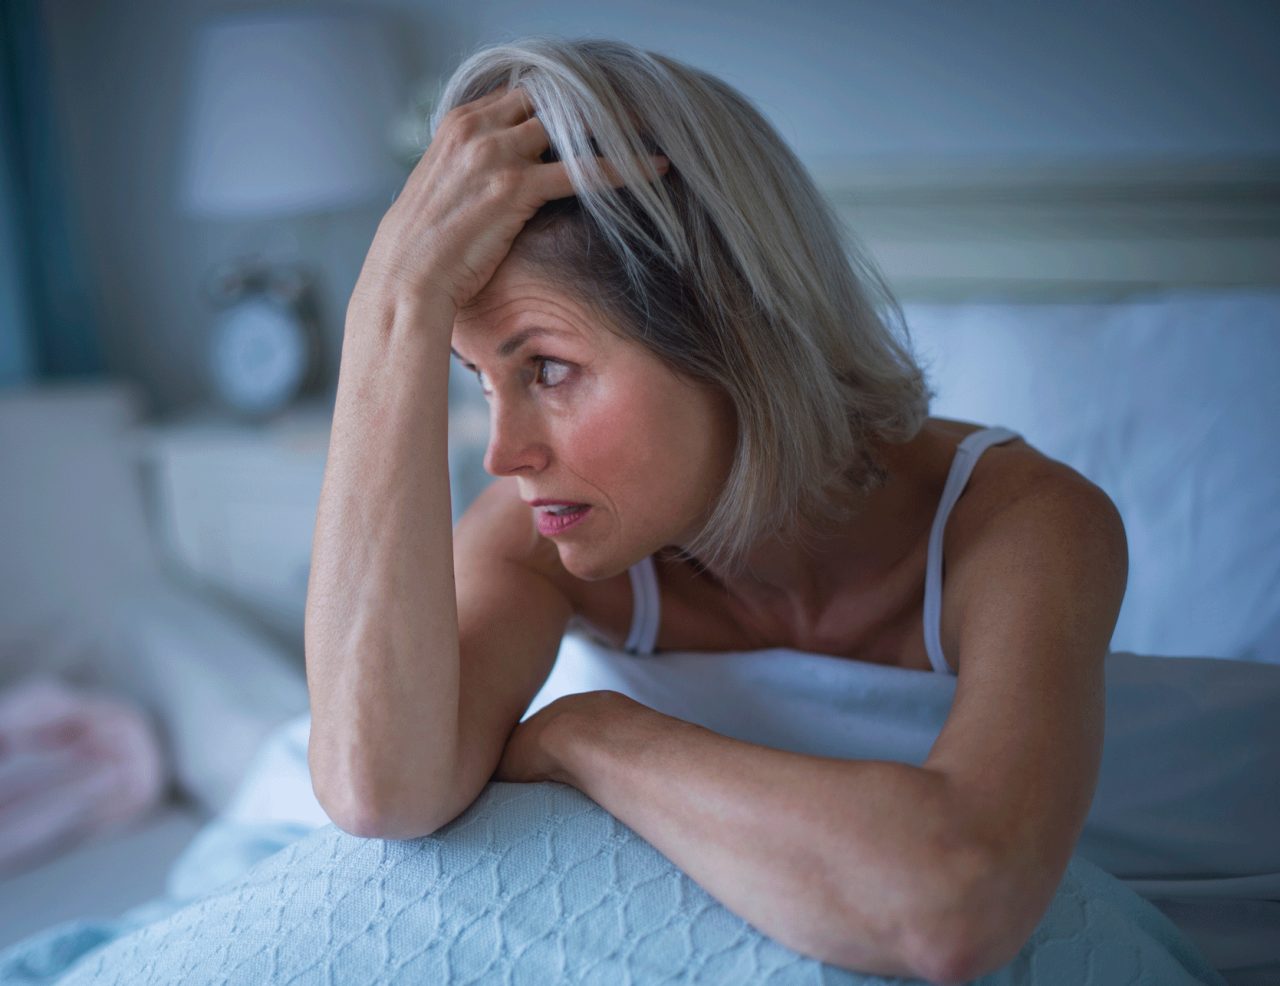 Does Poor Sleep Cause Dementia?